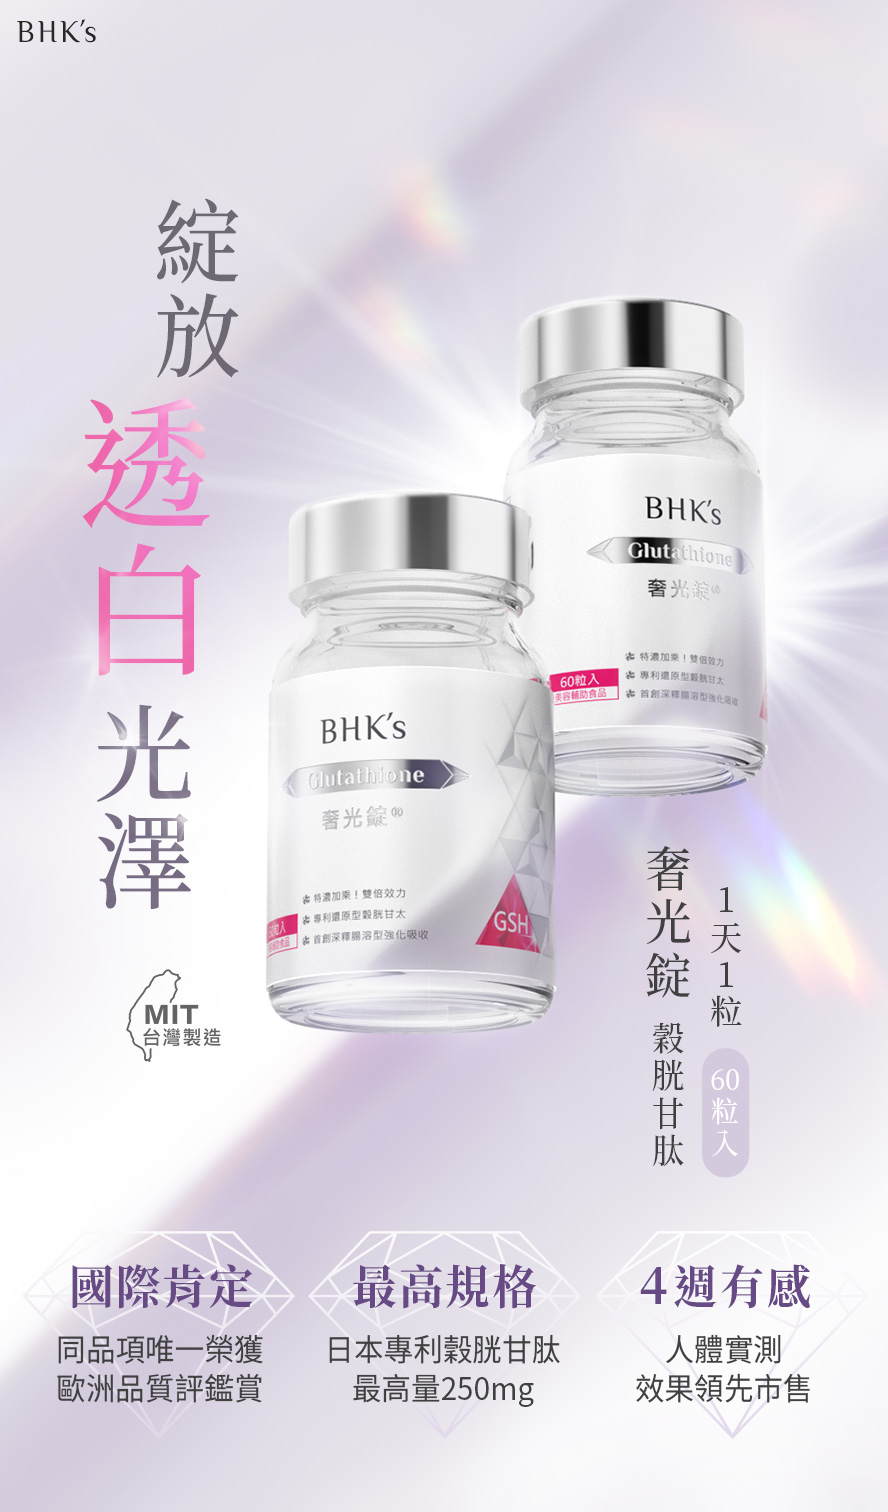 BHK's奢光錠為市售唯一經人體實證4週有效變白的美白錠，榖胱甘肽天佳最高劑量250mg。